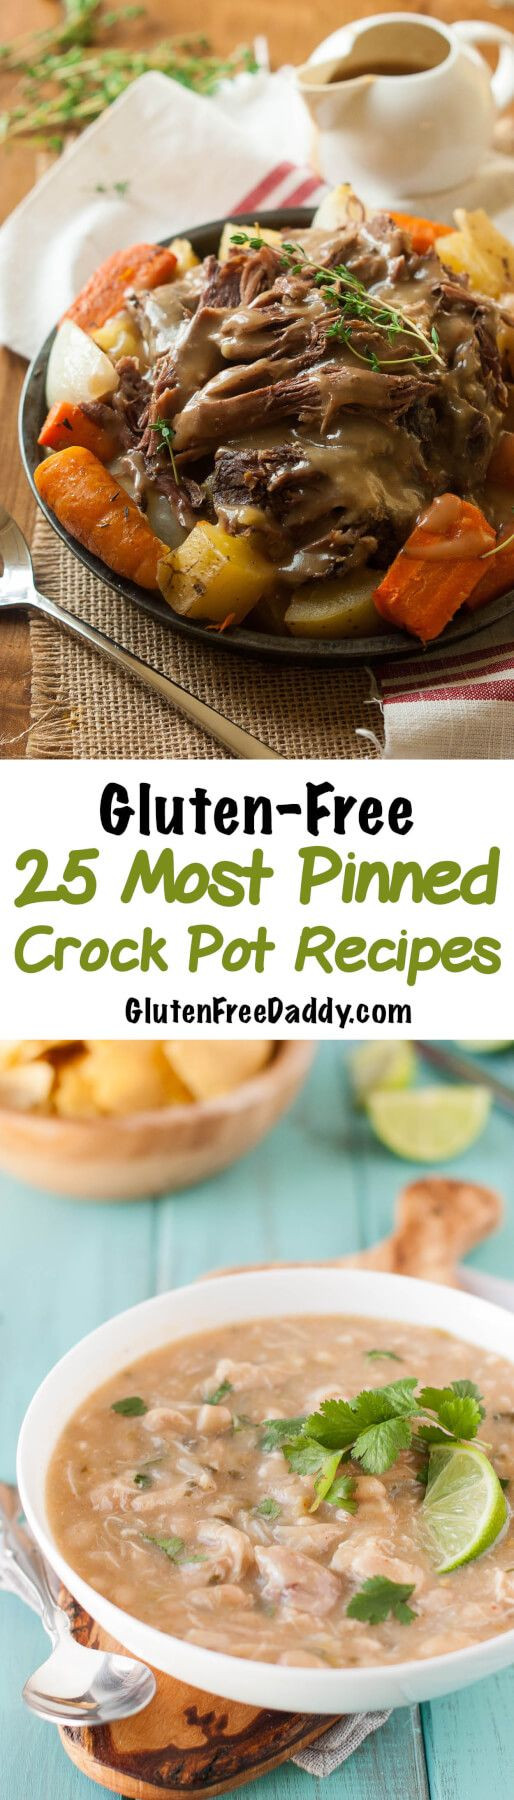 Healthy Gluten Free Crock Pot Recipes
 Best 25 Gluten Free ideas only on Pinterest